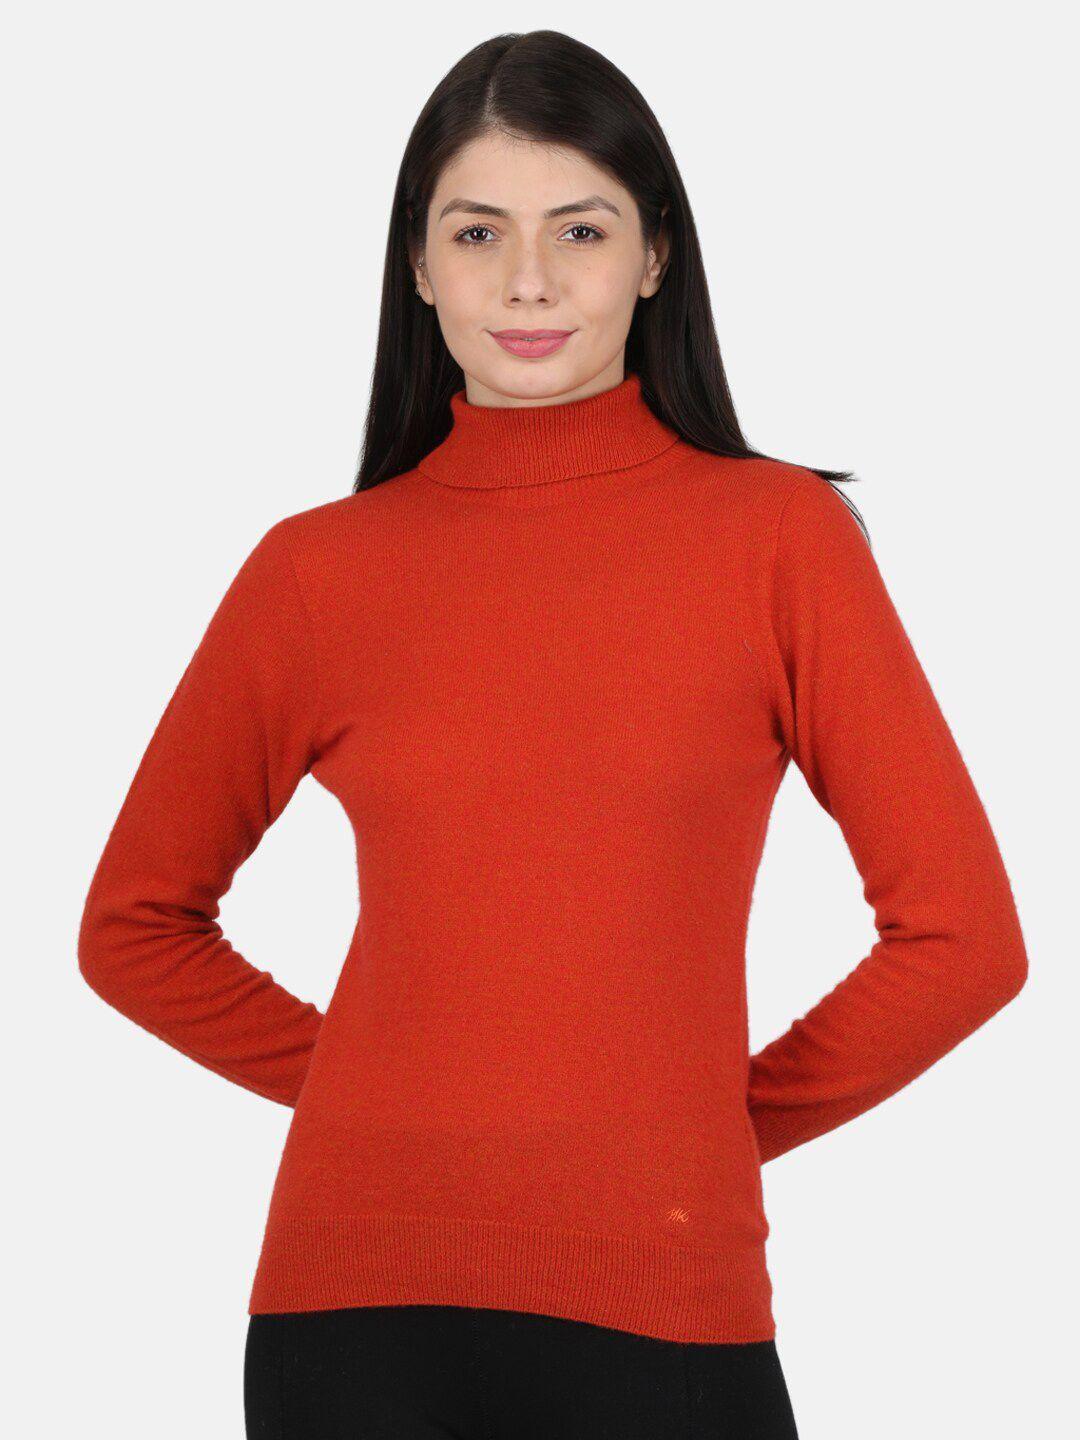 monte carlo women's lambs wool orange solid high neck sceavy top